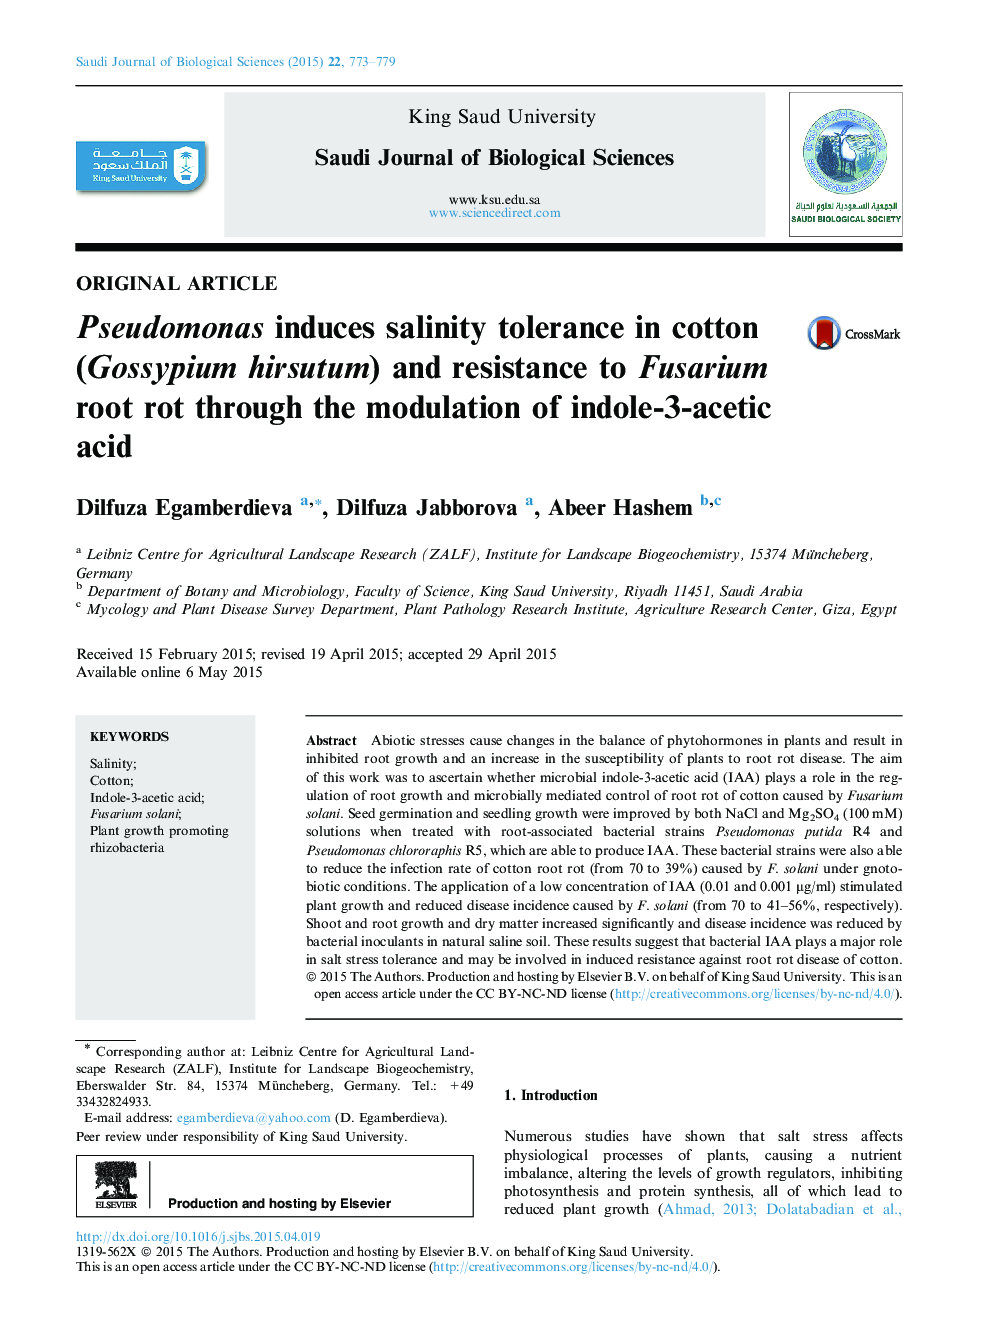 Pseudomonas induces salinity tolerance in cotton (Gossypium hirsutum) and resistance to Fusarium root rot through the modulation of indole-3-acetic acid 